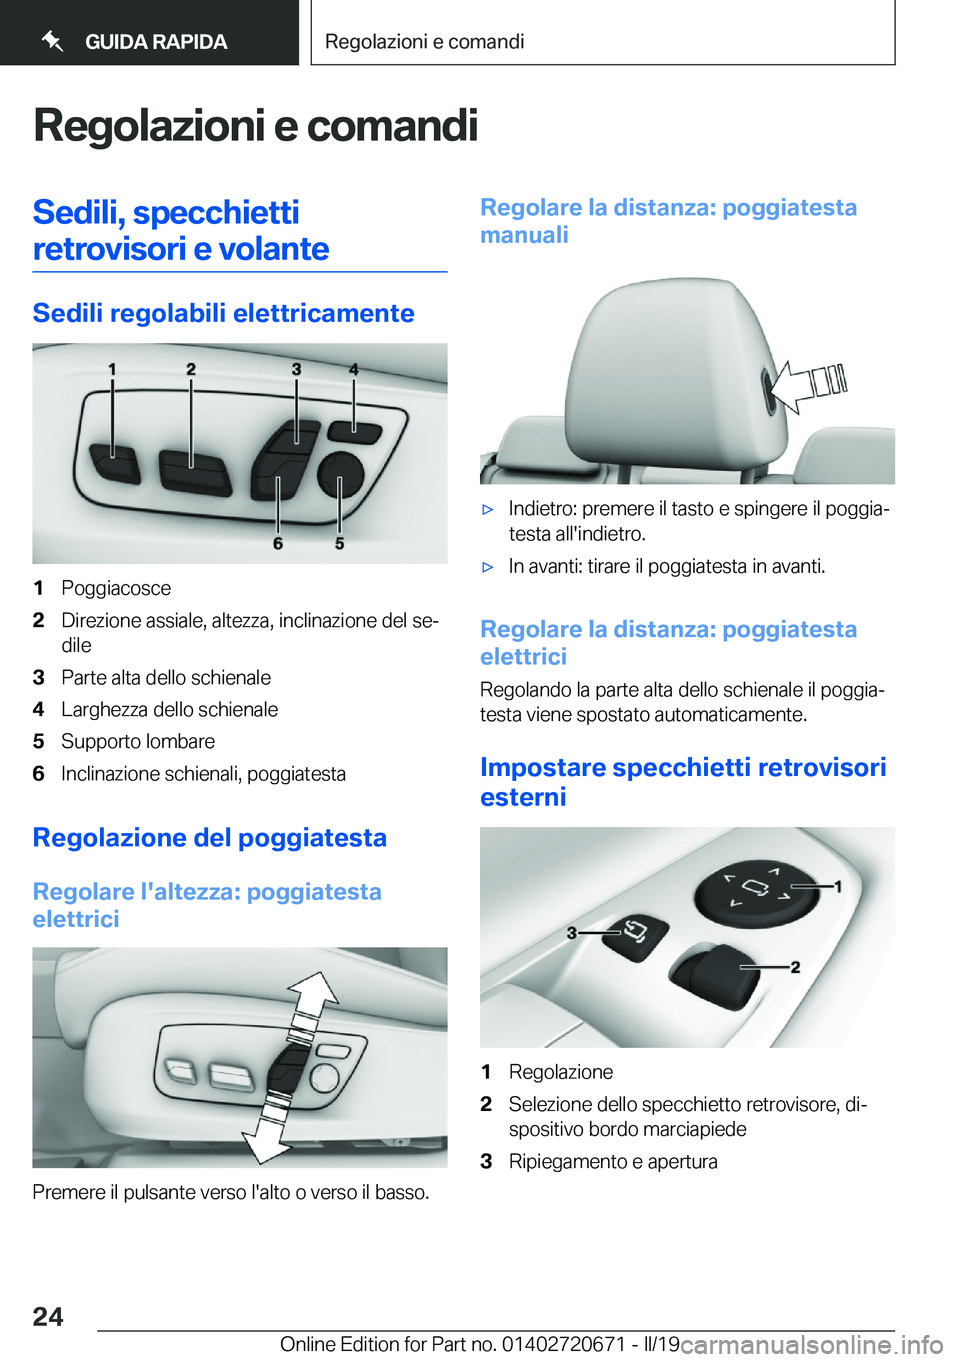 BMW M5 2019  Libretti Di Uso E manutenzione (in Italian) �R�e�g�o�l�a�z�i�o�n�i��e��c�o�m�a�n�d�i�S�e�d�i�l�i�,��s�p�e�c�c�h�i�e�t�t�i�r�e�t�r�o�v�i�s�o�r�i��e��v�o�l�a�n�t�e
�S�e�d�i�l�i��r�e�g�o�l�a�b�i�l�i��e�l�e�t�t�r�i�c�a�m�e�n�t�e
�1�P�o�g�g�i